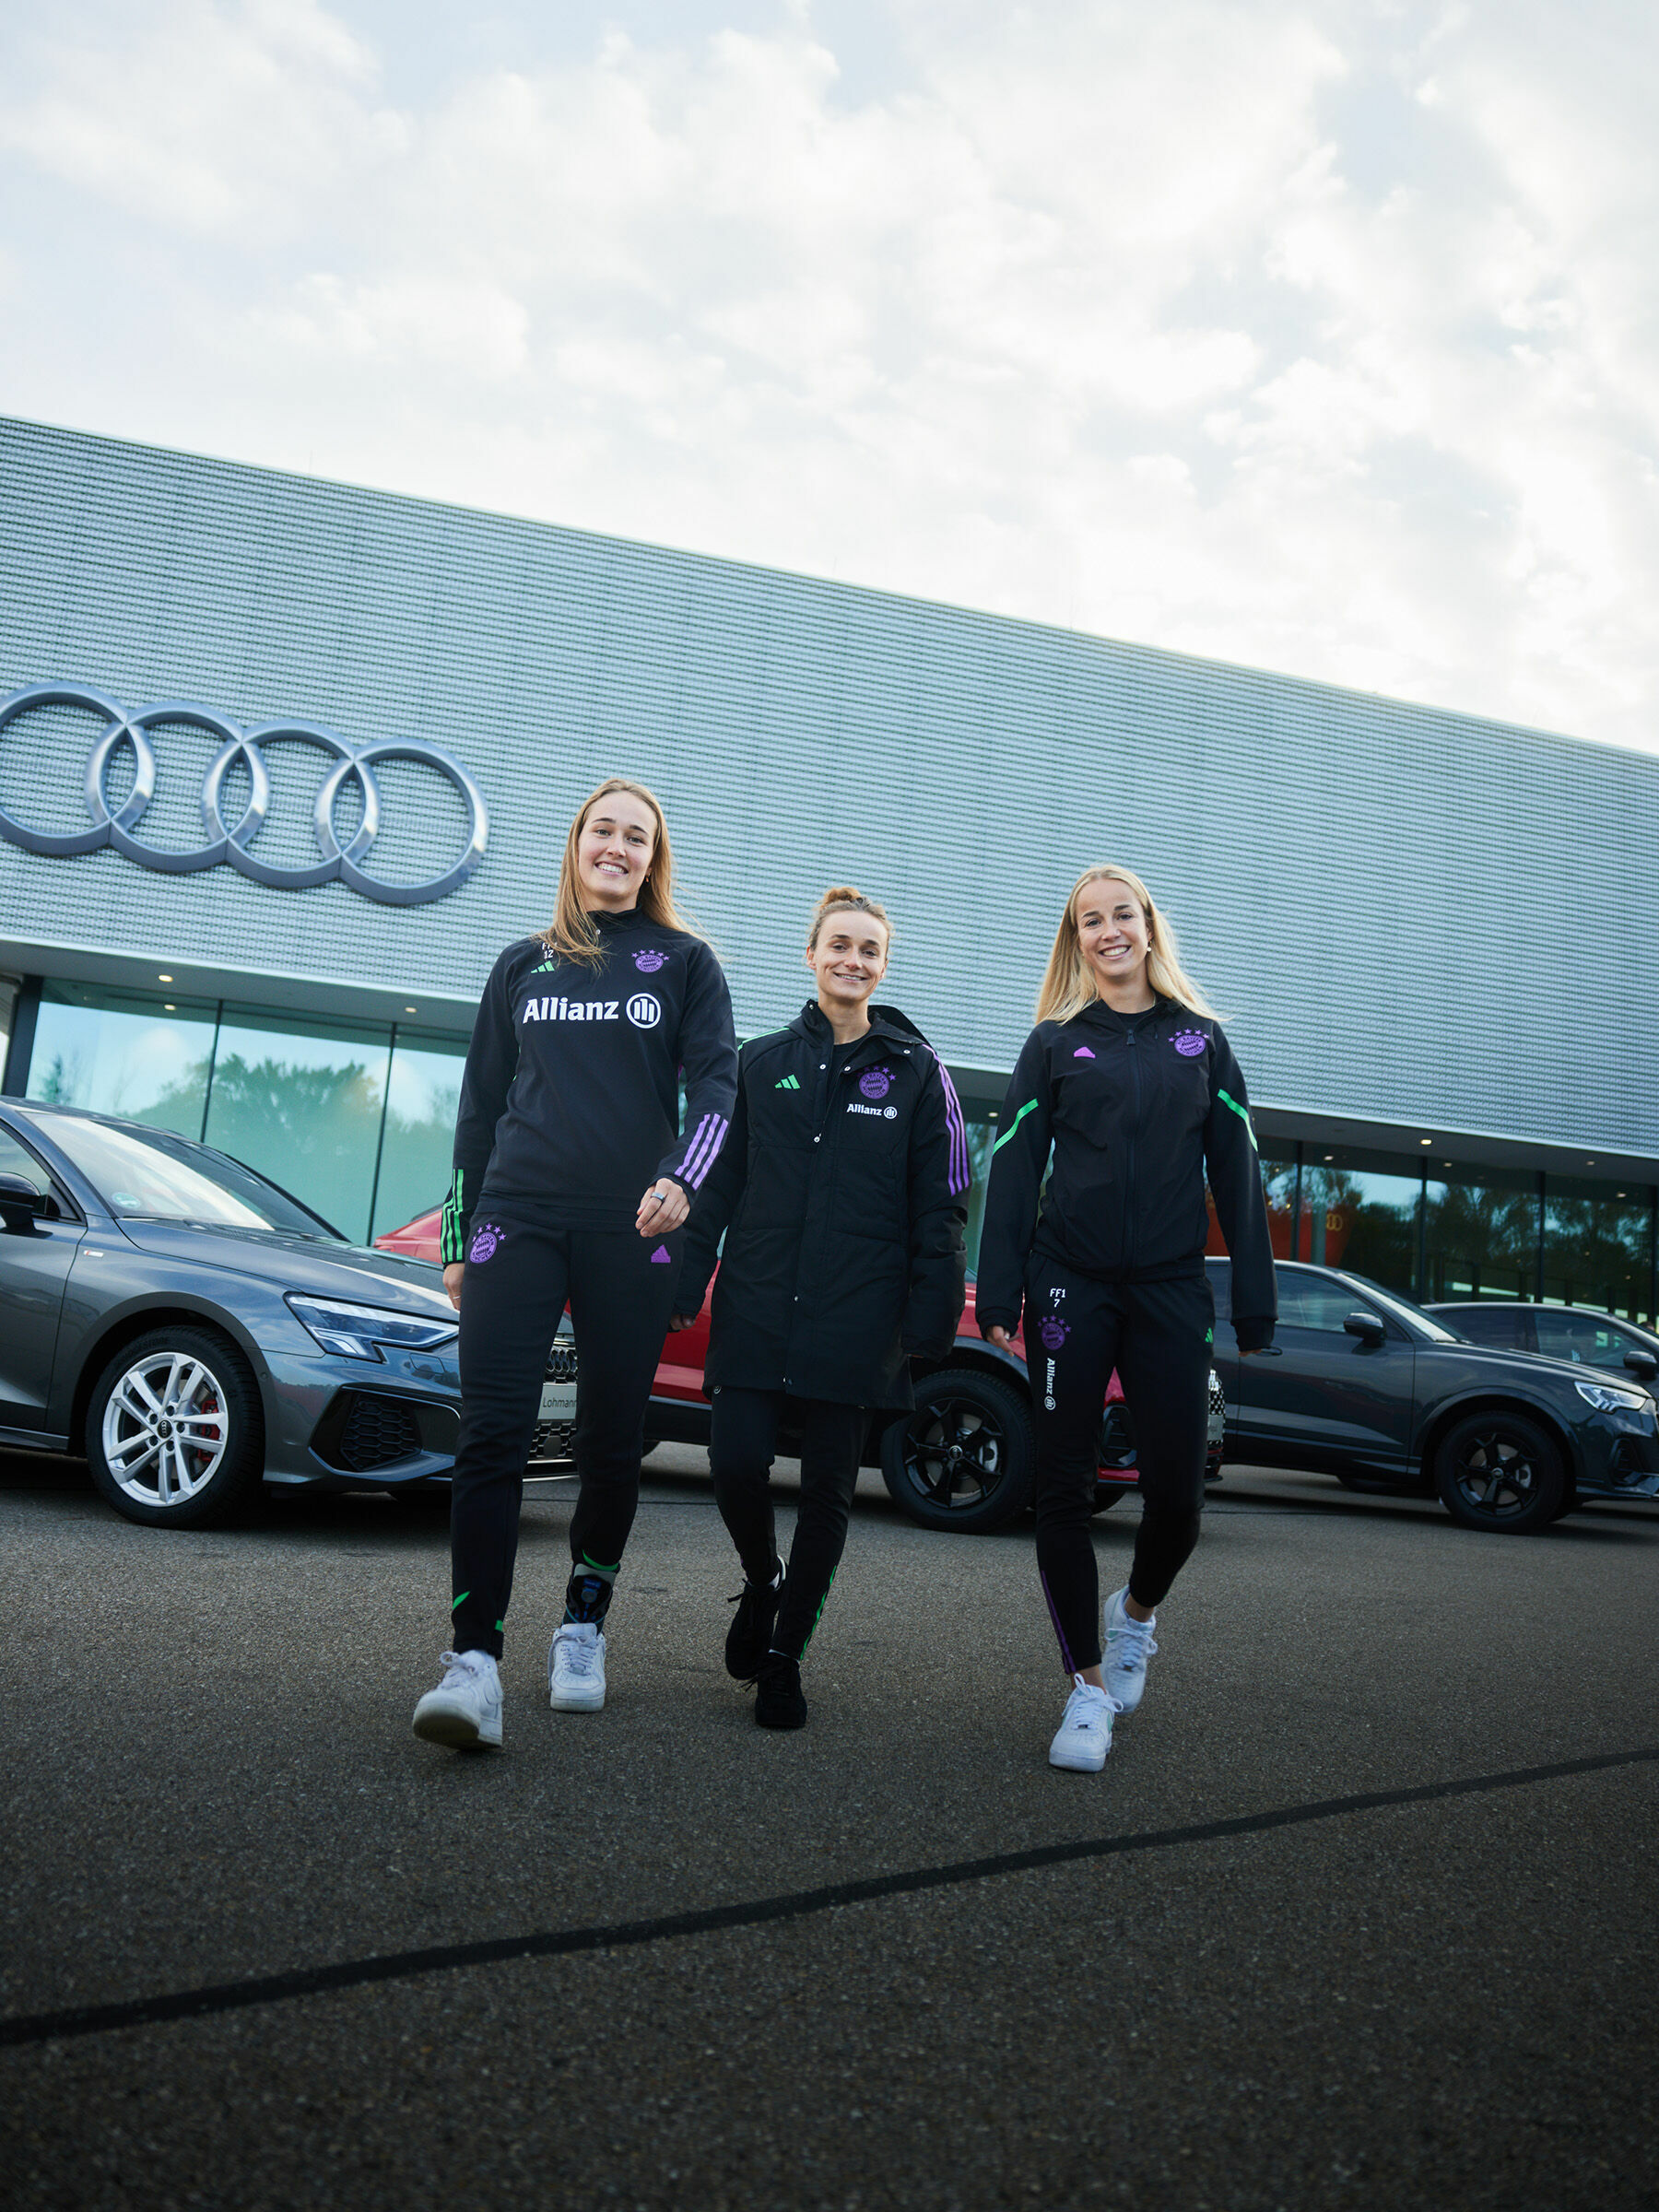 Audi Fahrzeugübergabe an die Frauenmannschaft des FC Bayern München